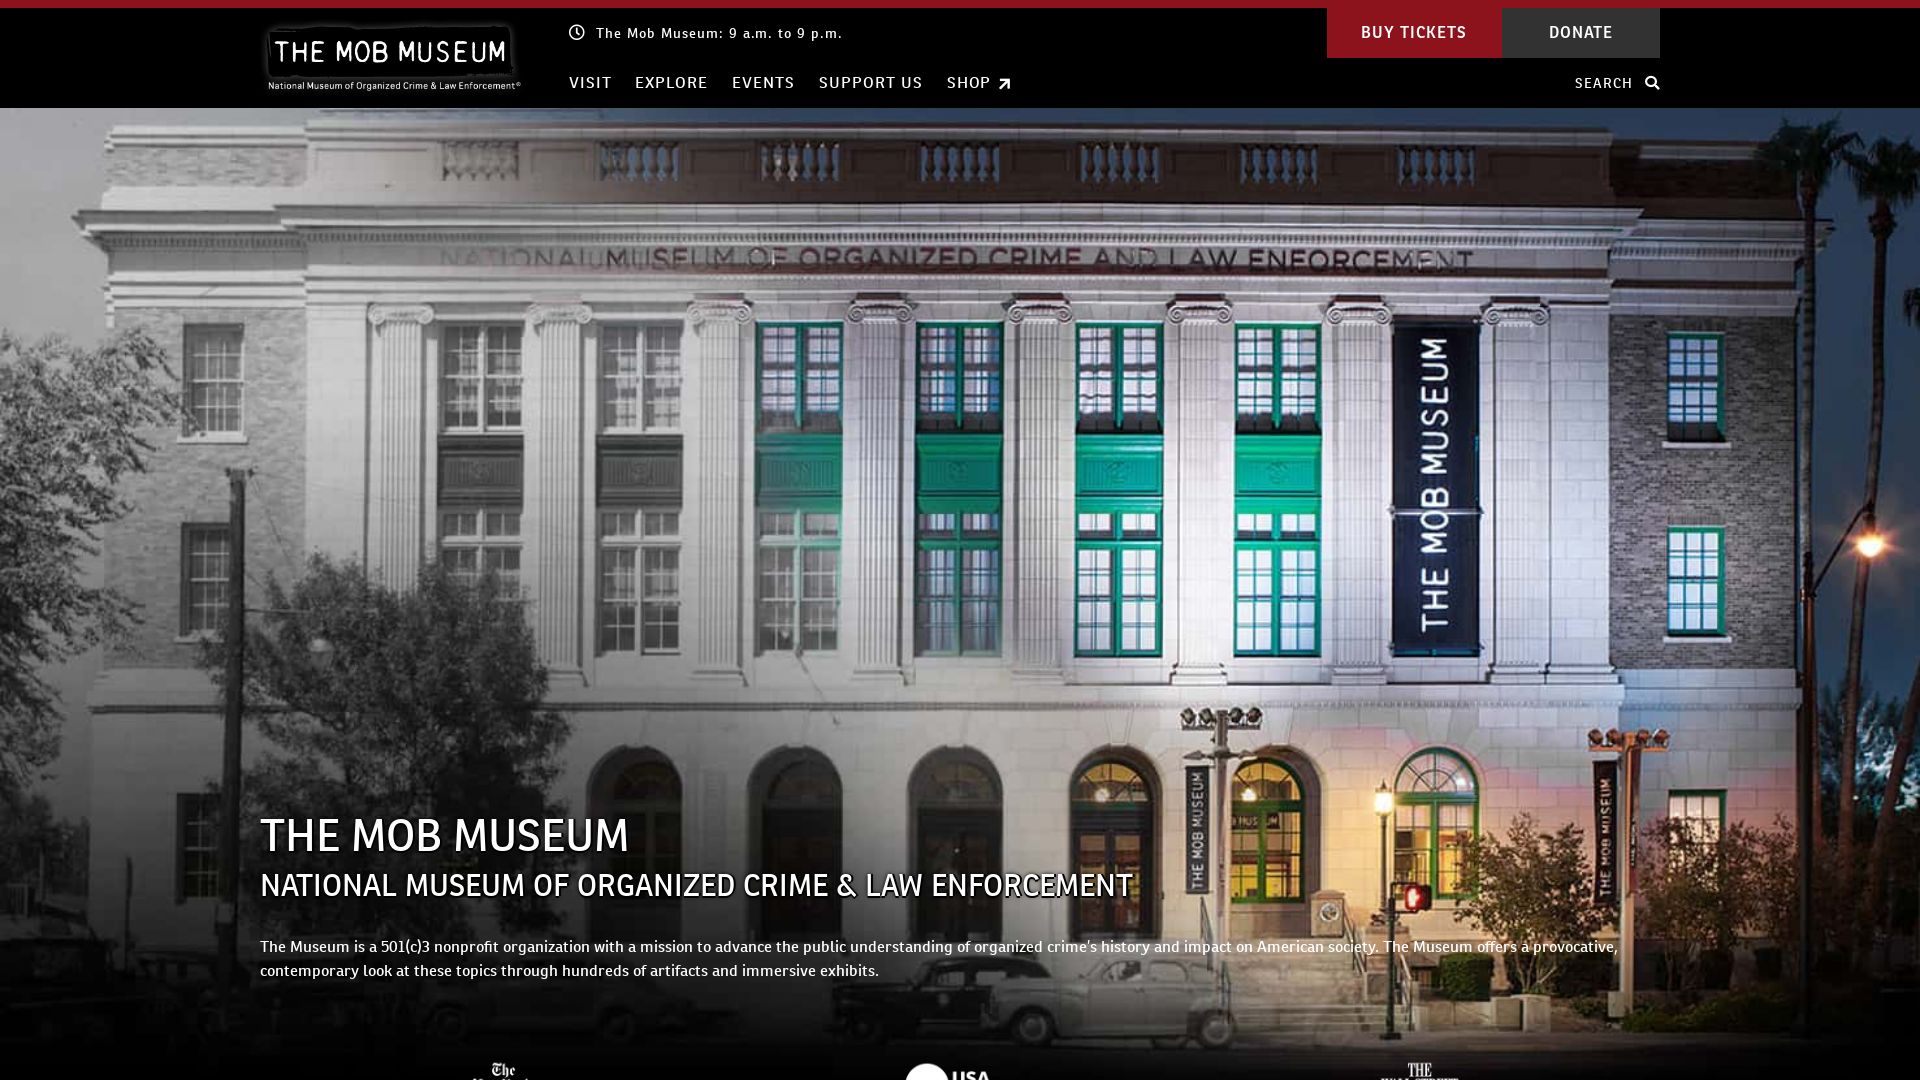 Estado web themobmuseum.org está   ONLINE